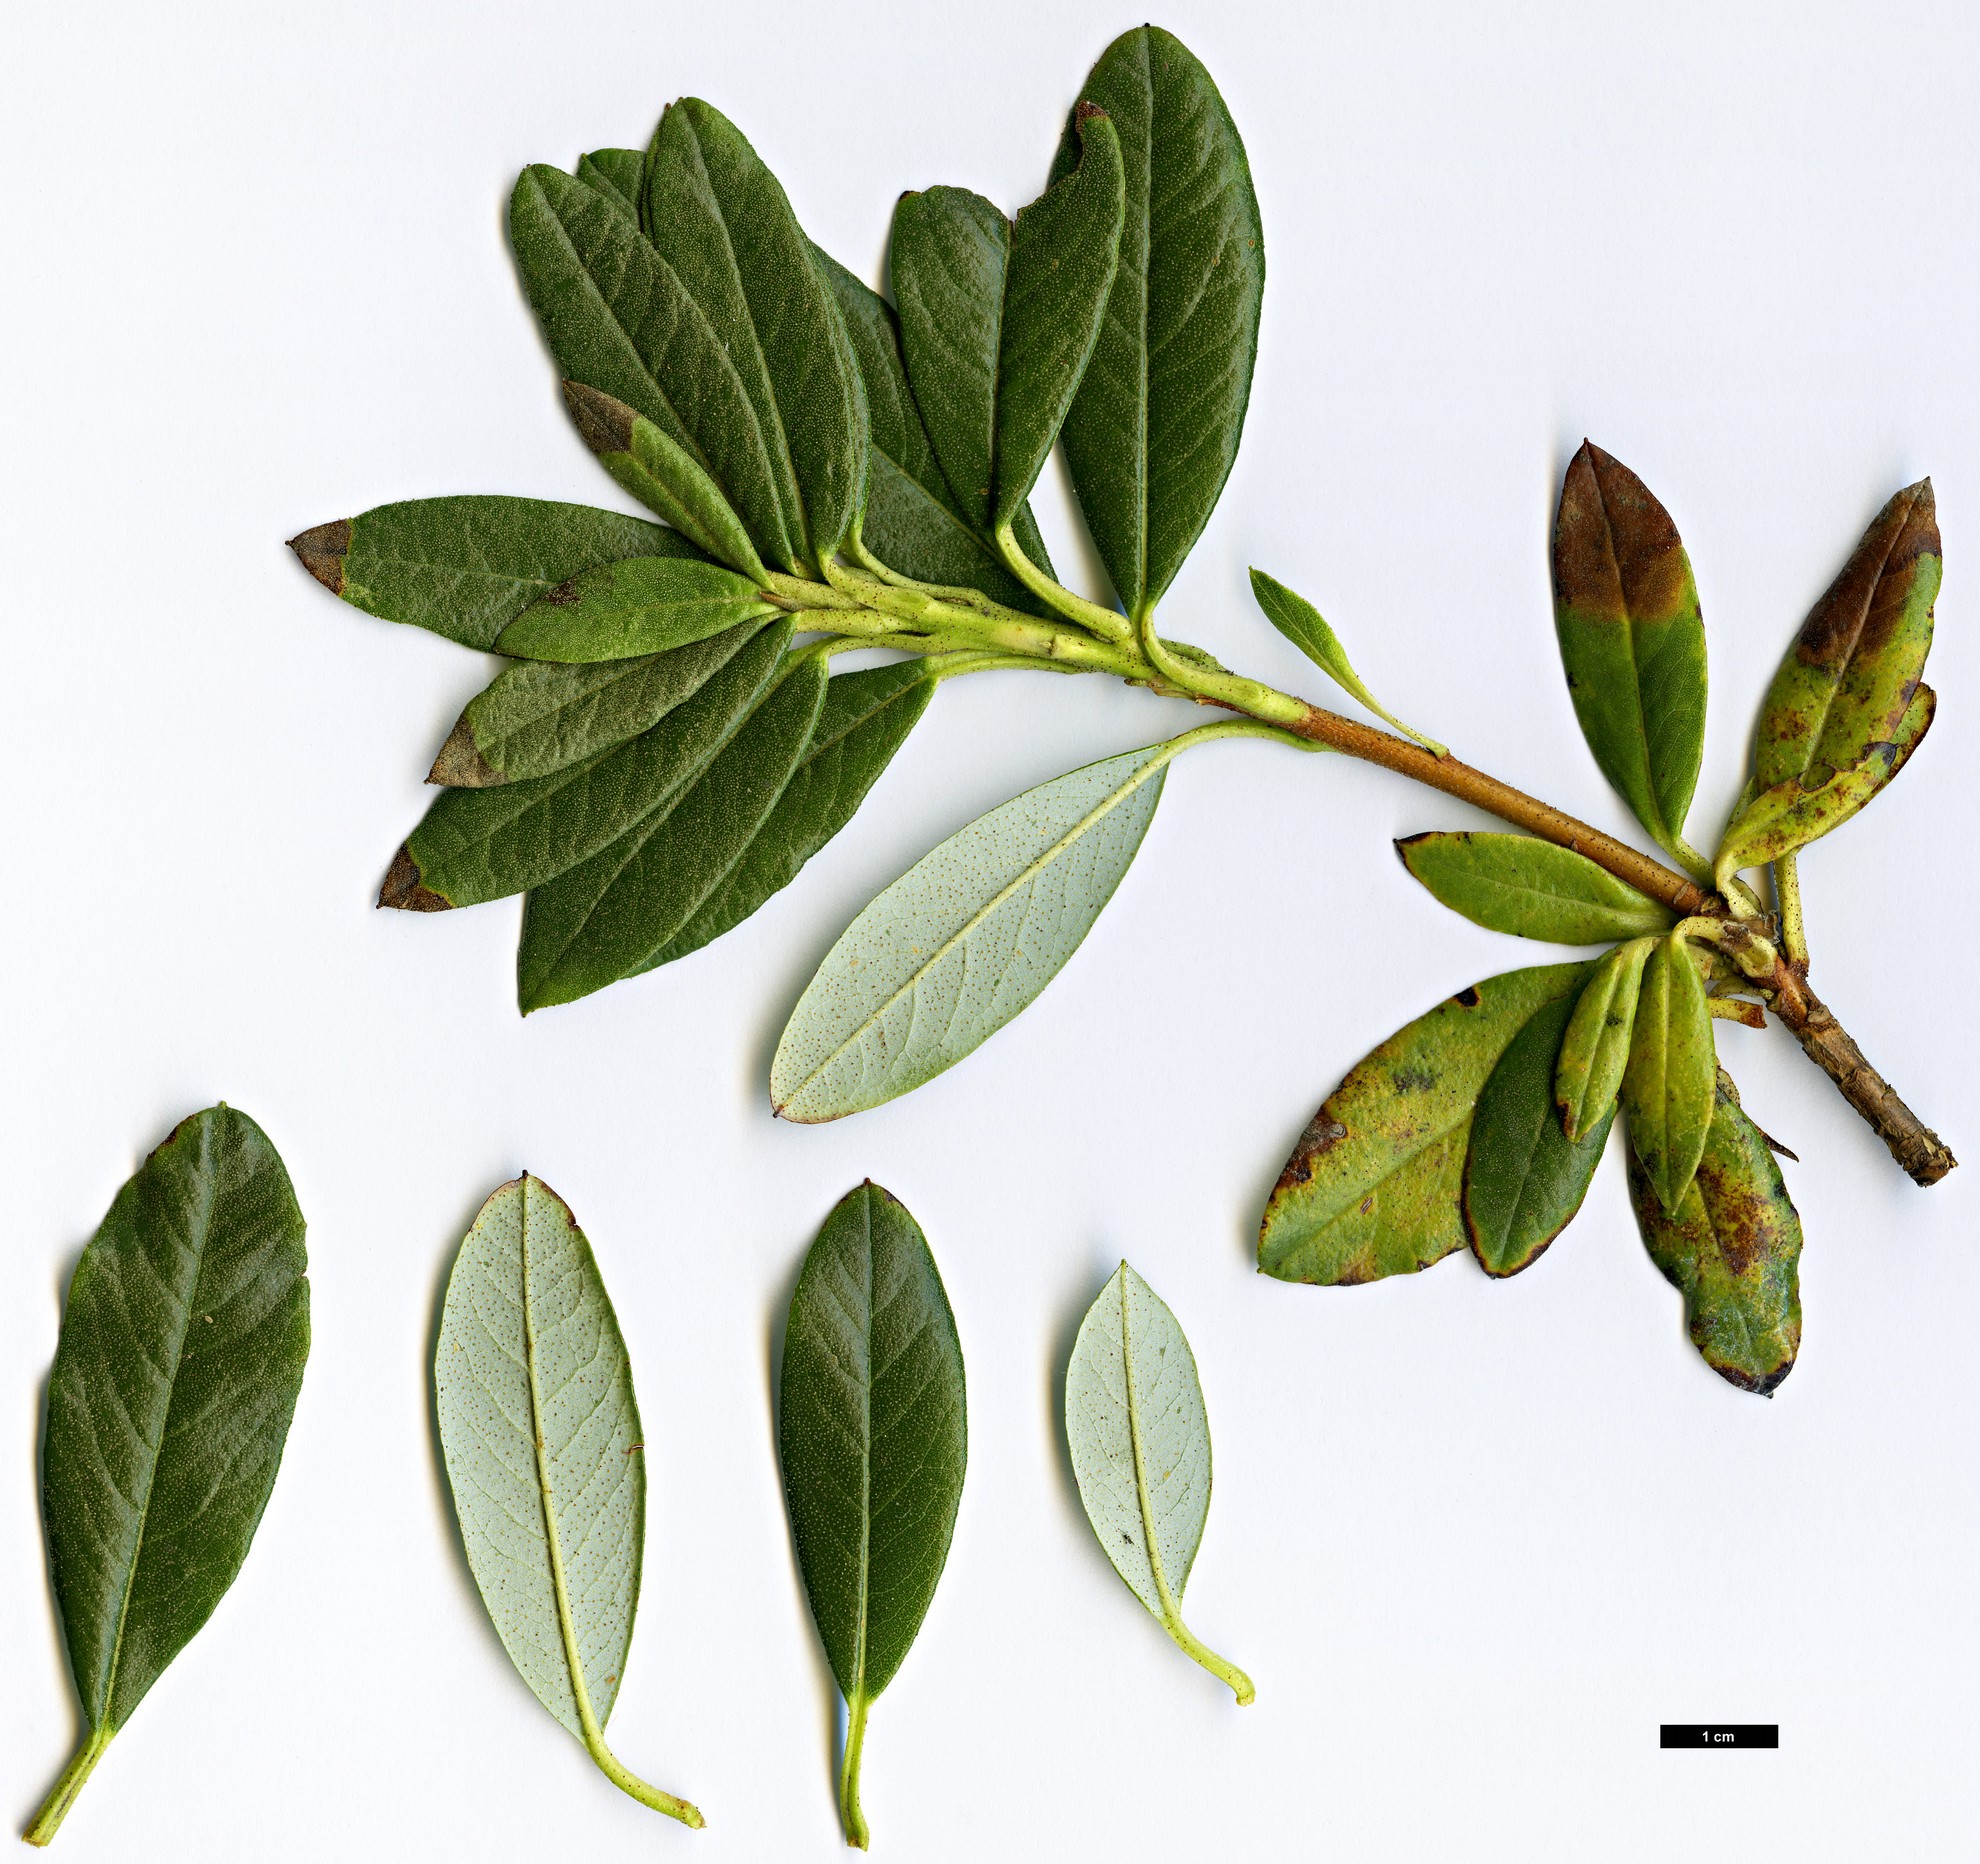 High resolution image: Family: Ericaceae - Genus: Rhododendron - Taxon: brachyanthum - SpeciesSub: subsp. hypolepidotum